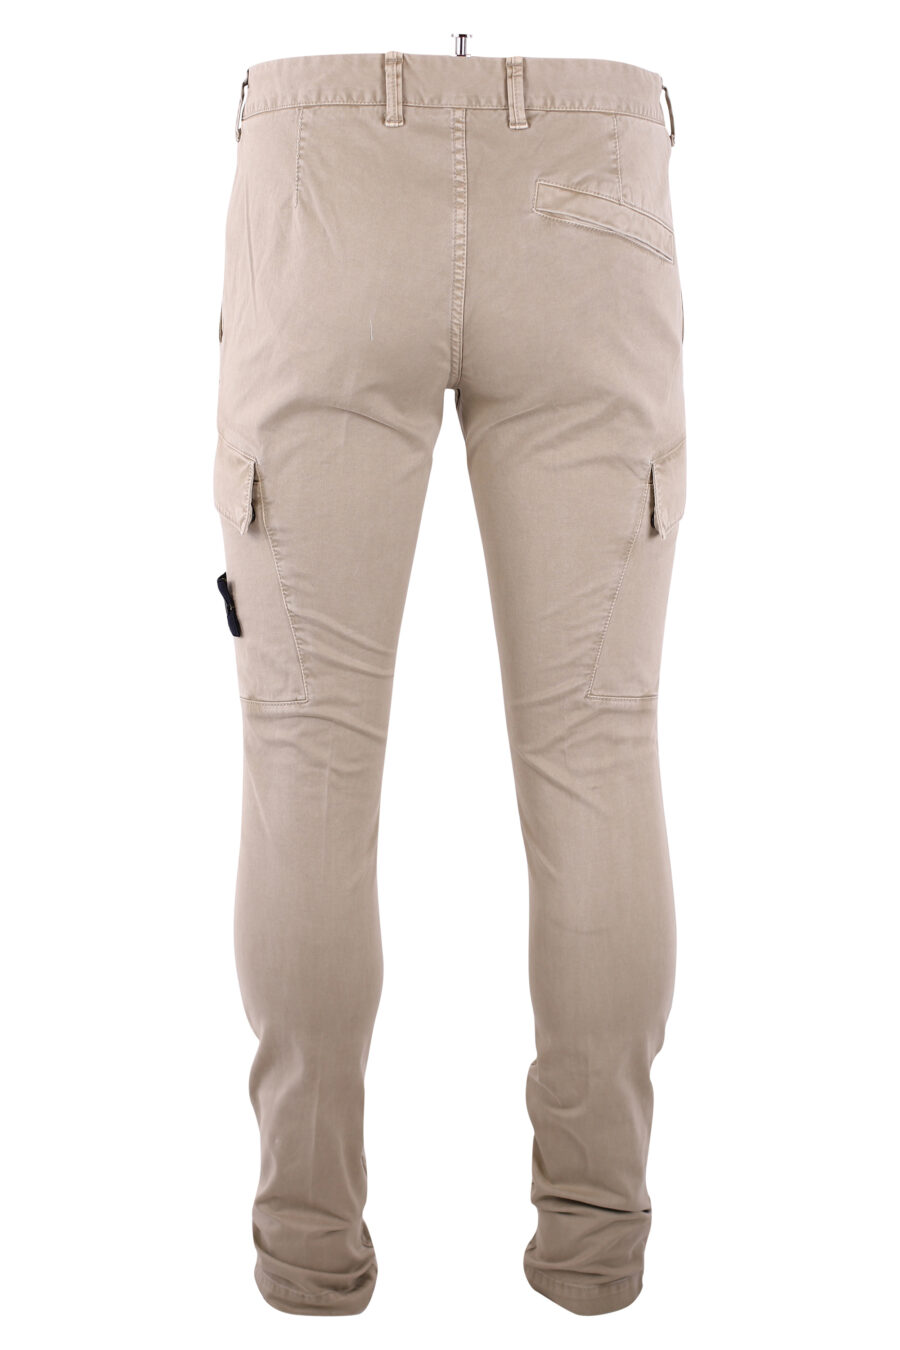 Pantalon beige avec poches latérales et écusson - IMG 3242